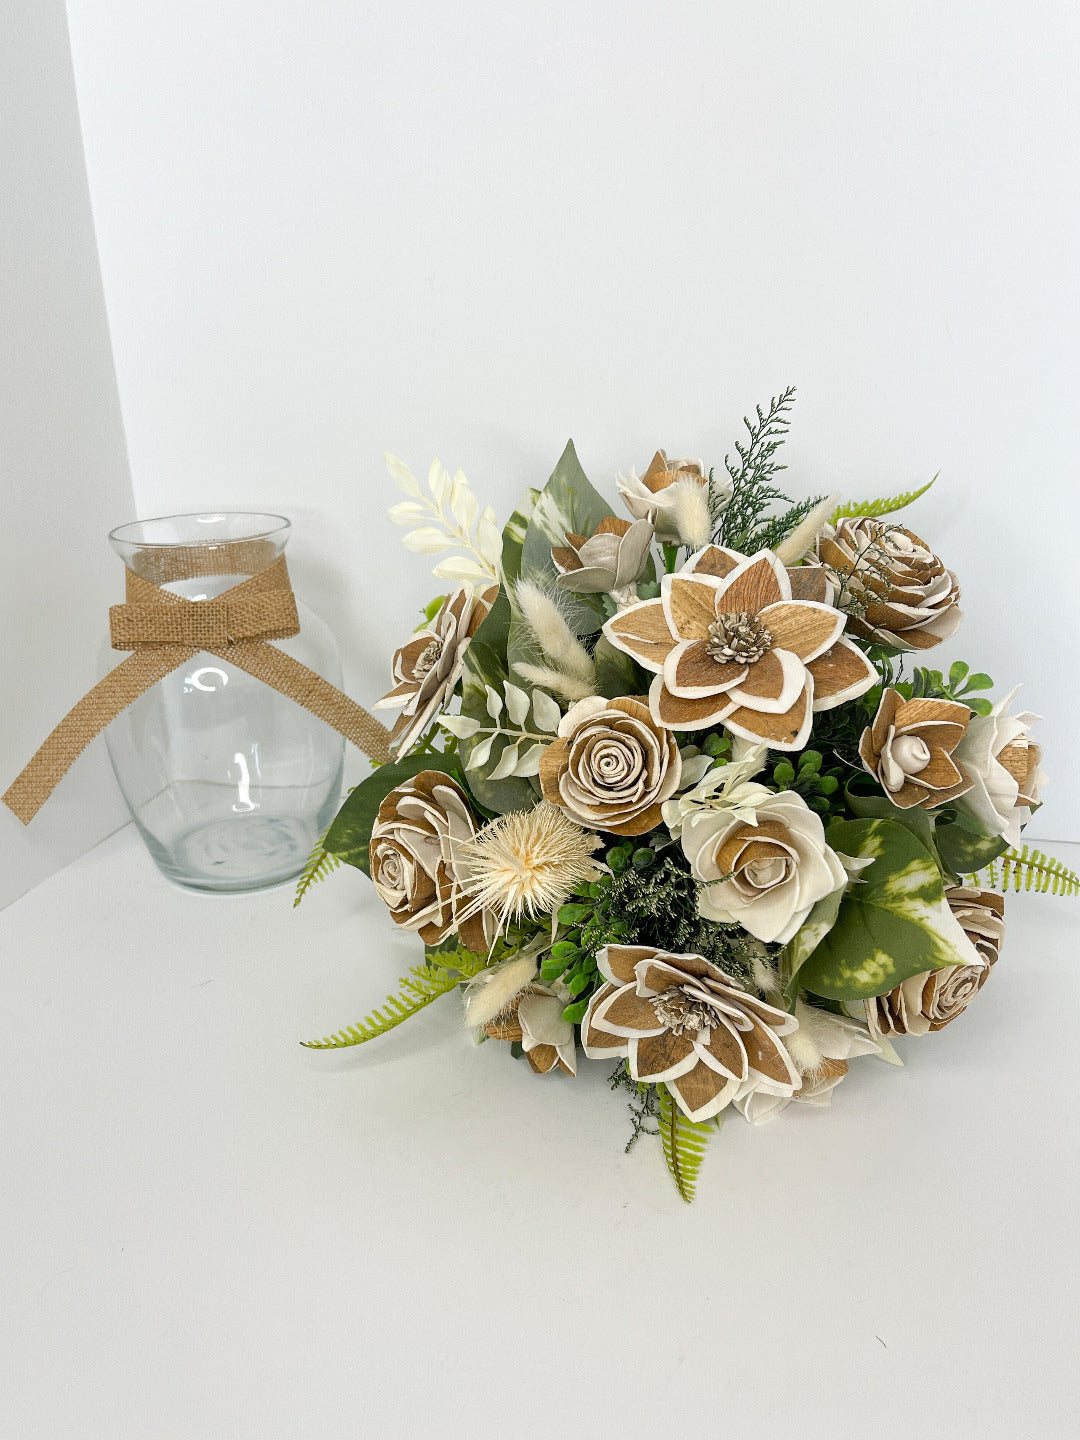 Northwoods Bouquet in Glass Vase